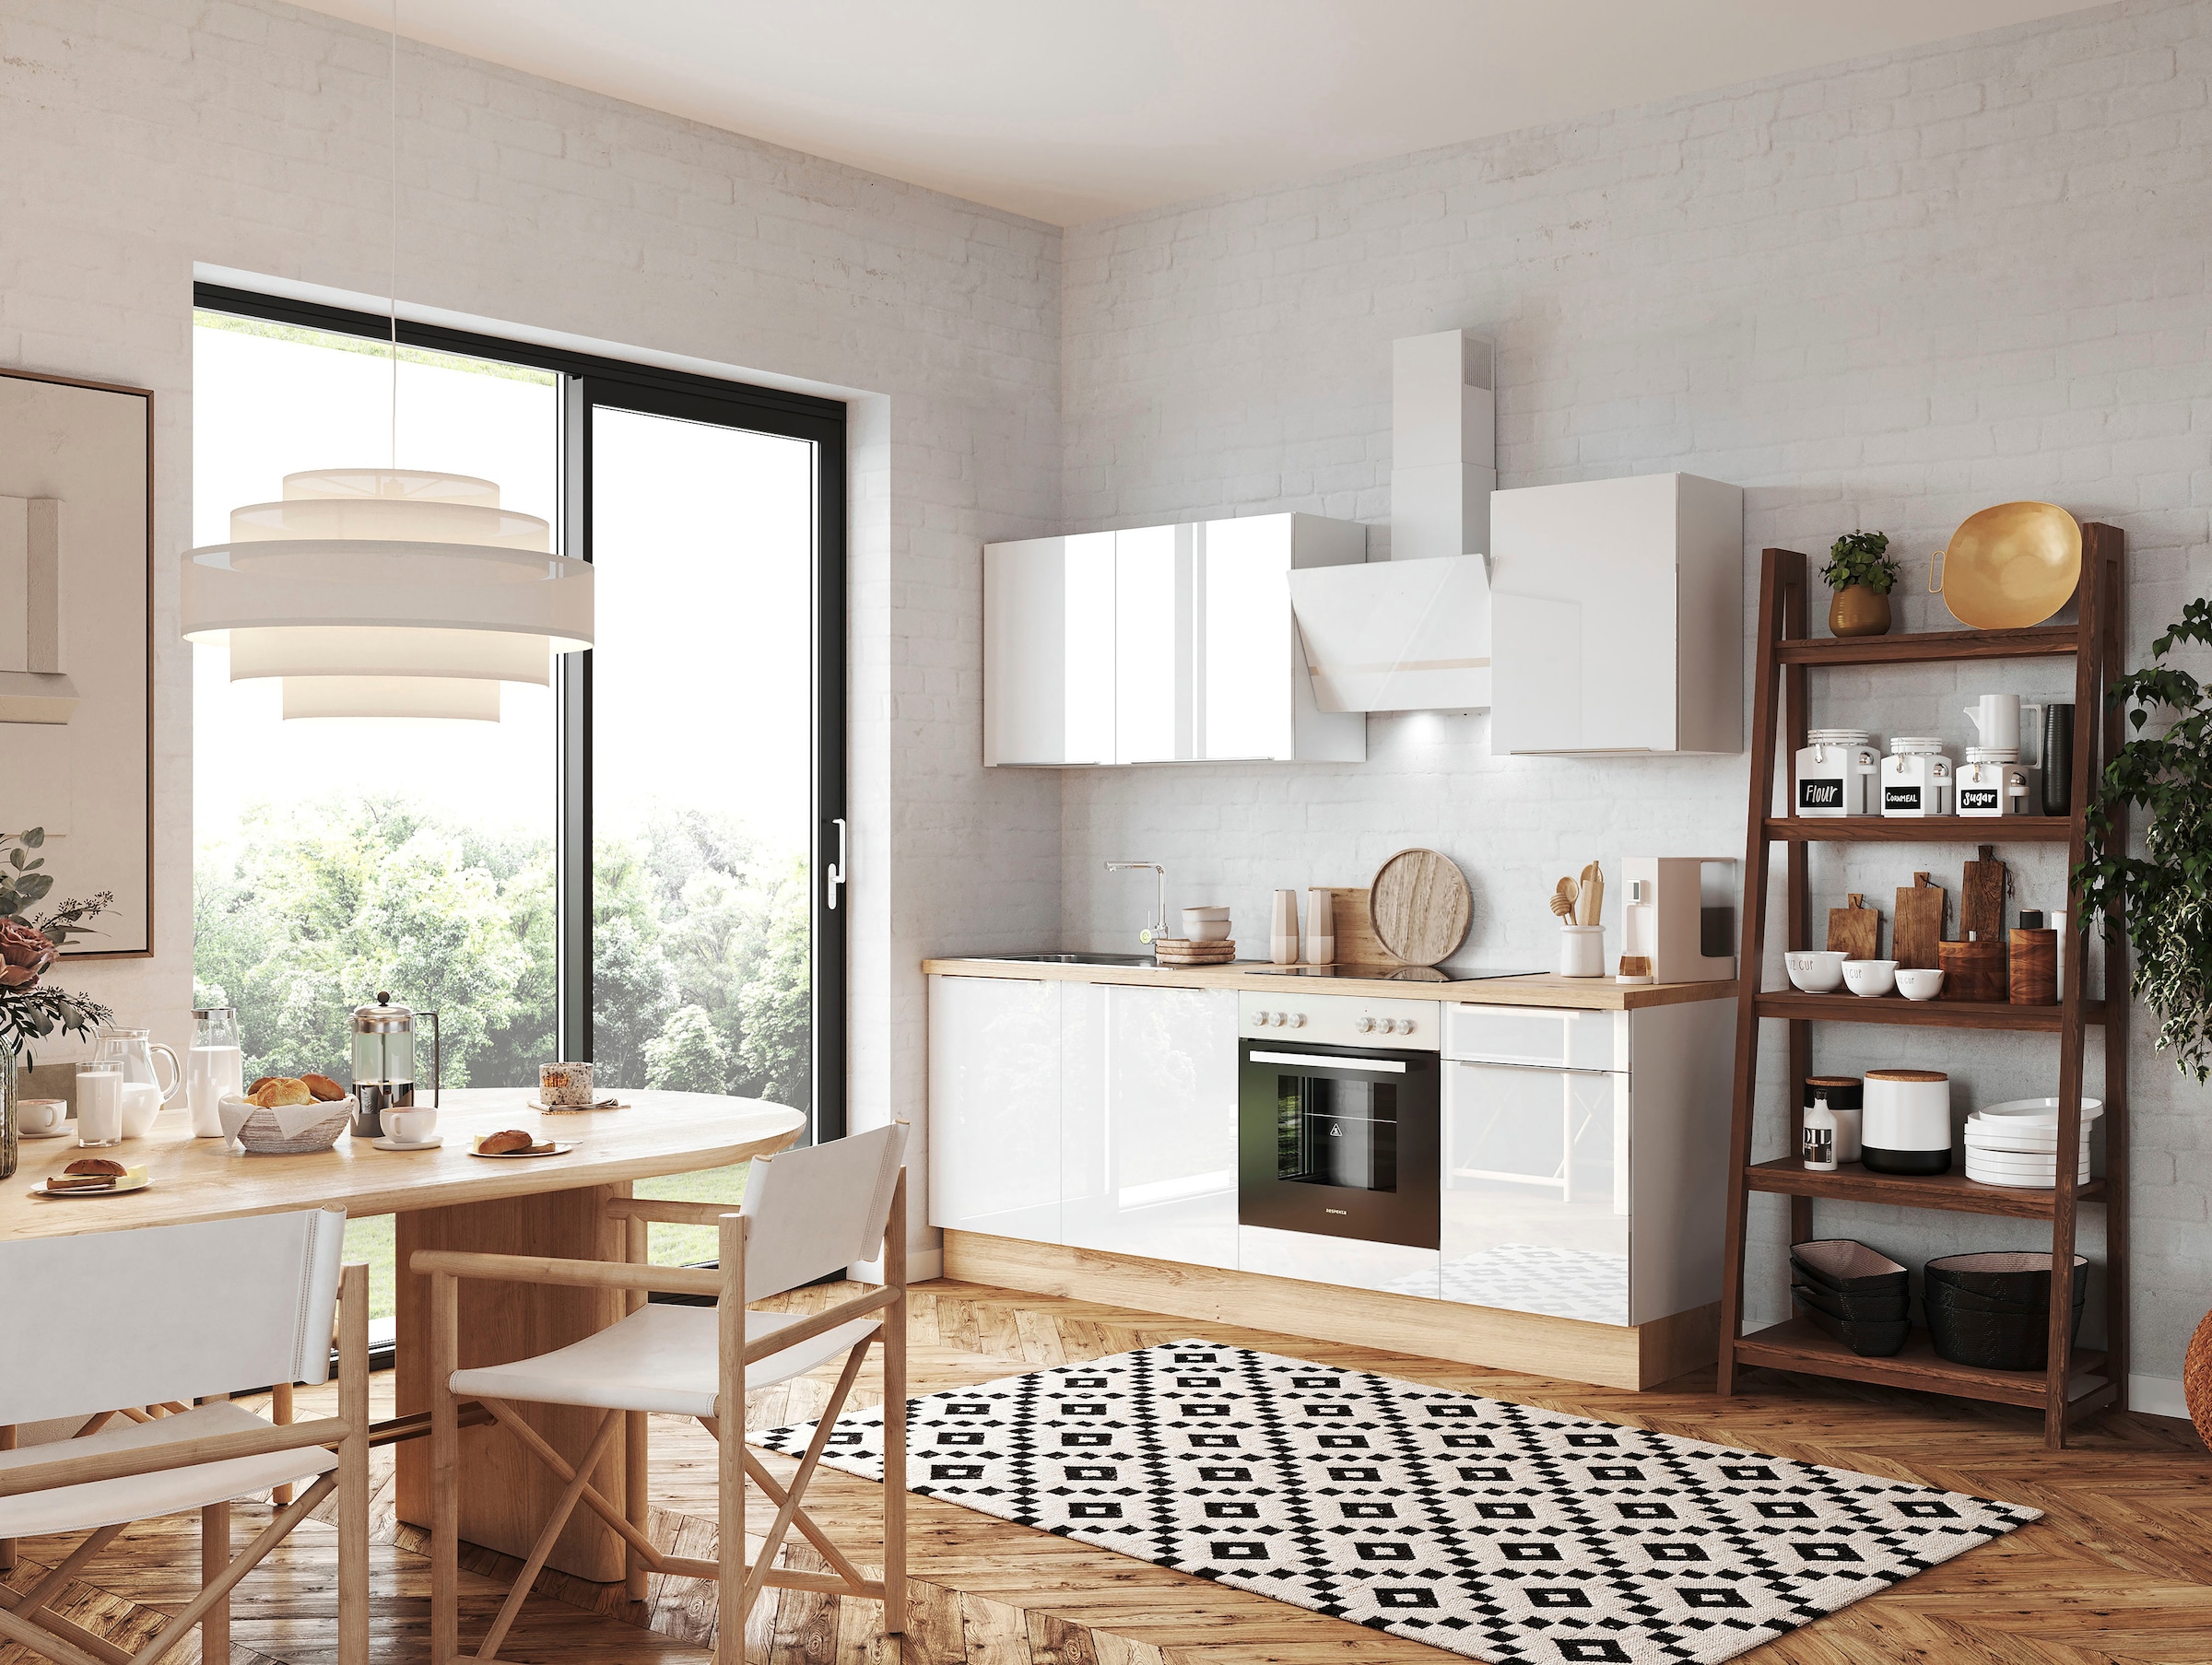 RESPEKTA Küchenzeile »Safado aus der Serie Marleen«, Breite 220 cm, hochwertige Ausstattung wie Soft Close Funktion